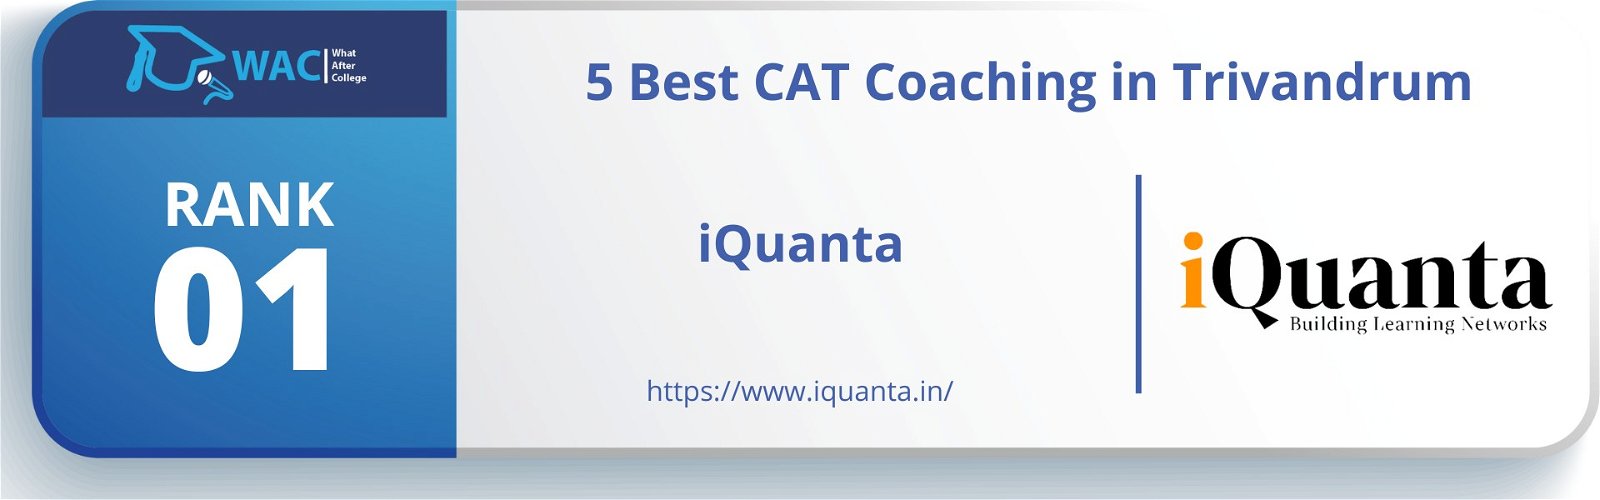 Cat Coaching In Trivandrum